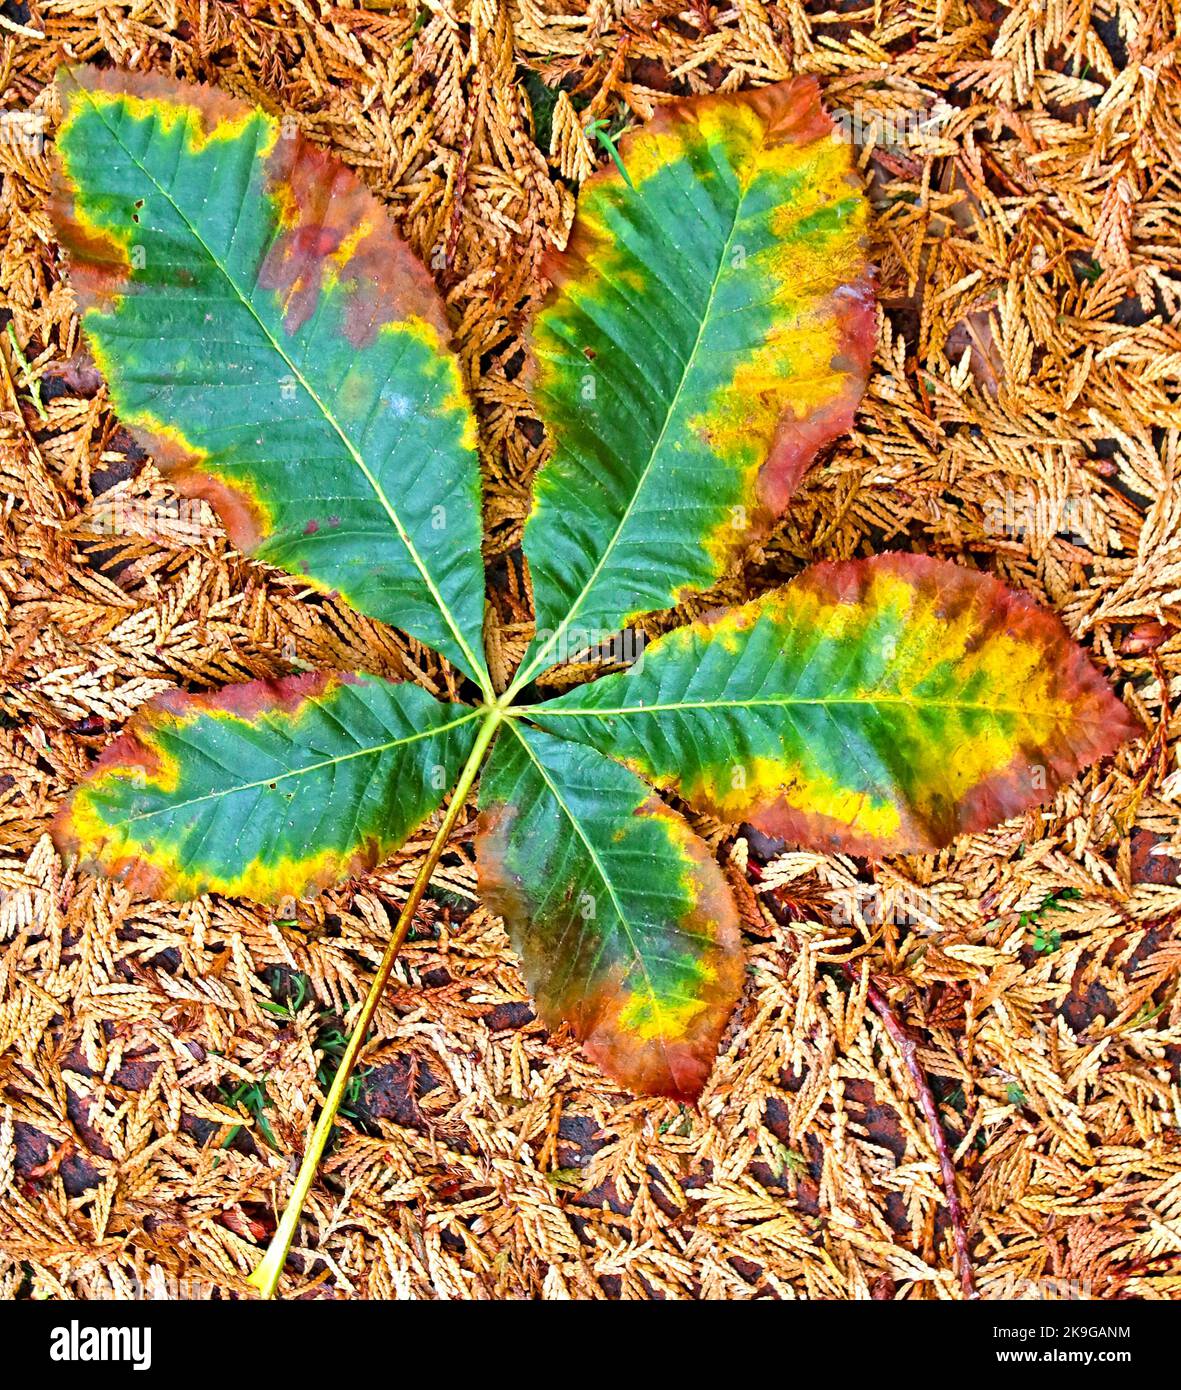 Herbstblatt mit Platanenblättern, grün, gelb und braun Stockfoto